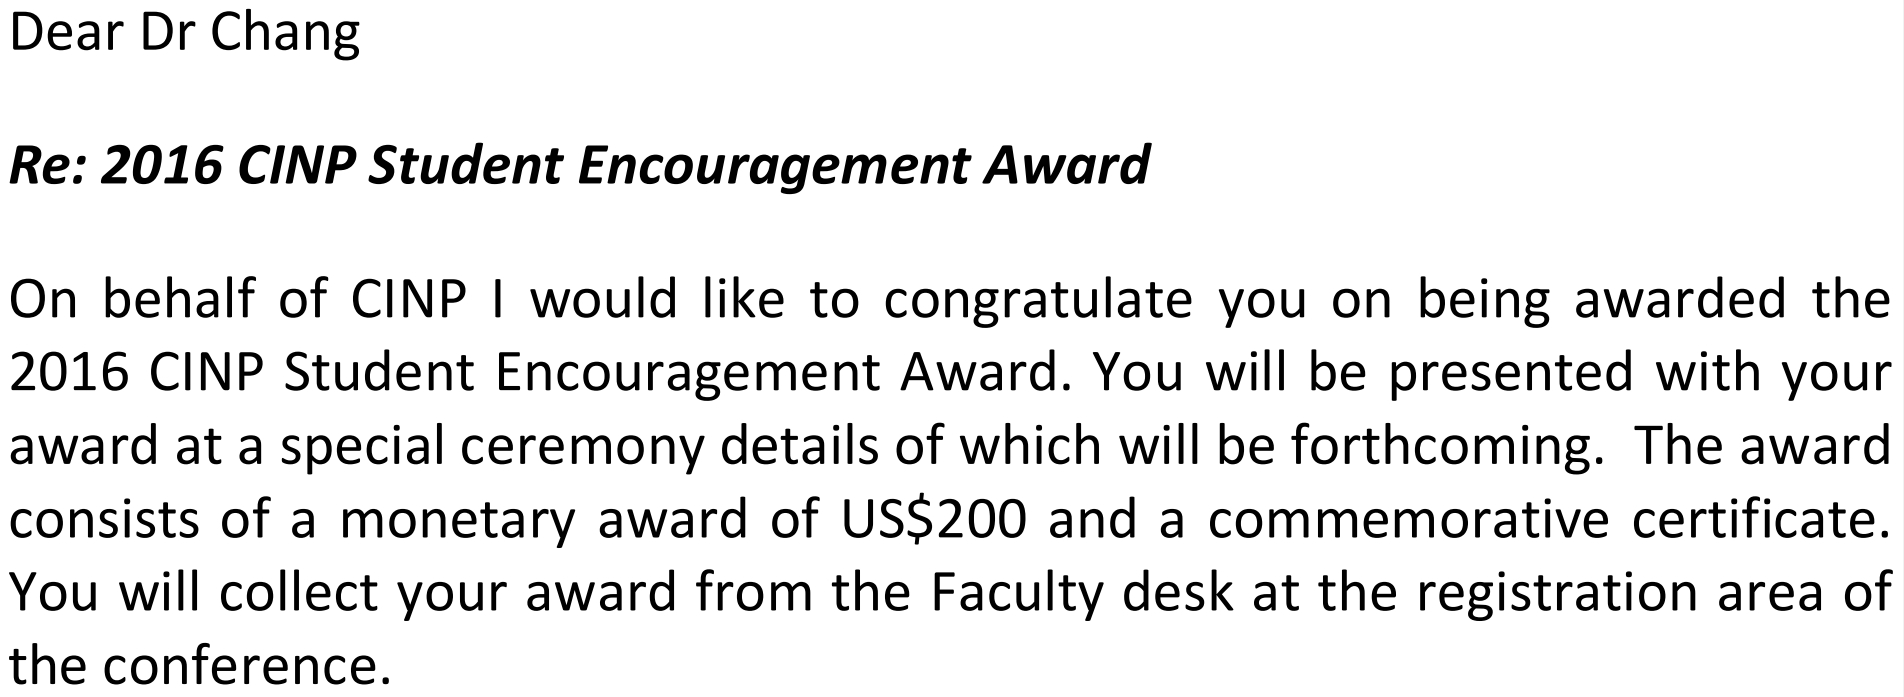 2016_cinp_student_encouragement_award_chchang_01